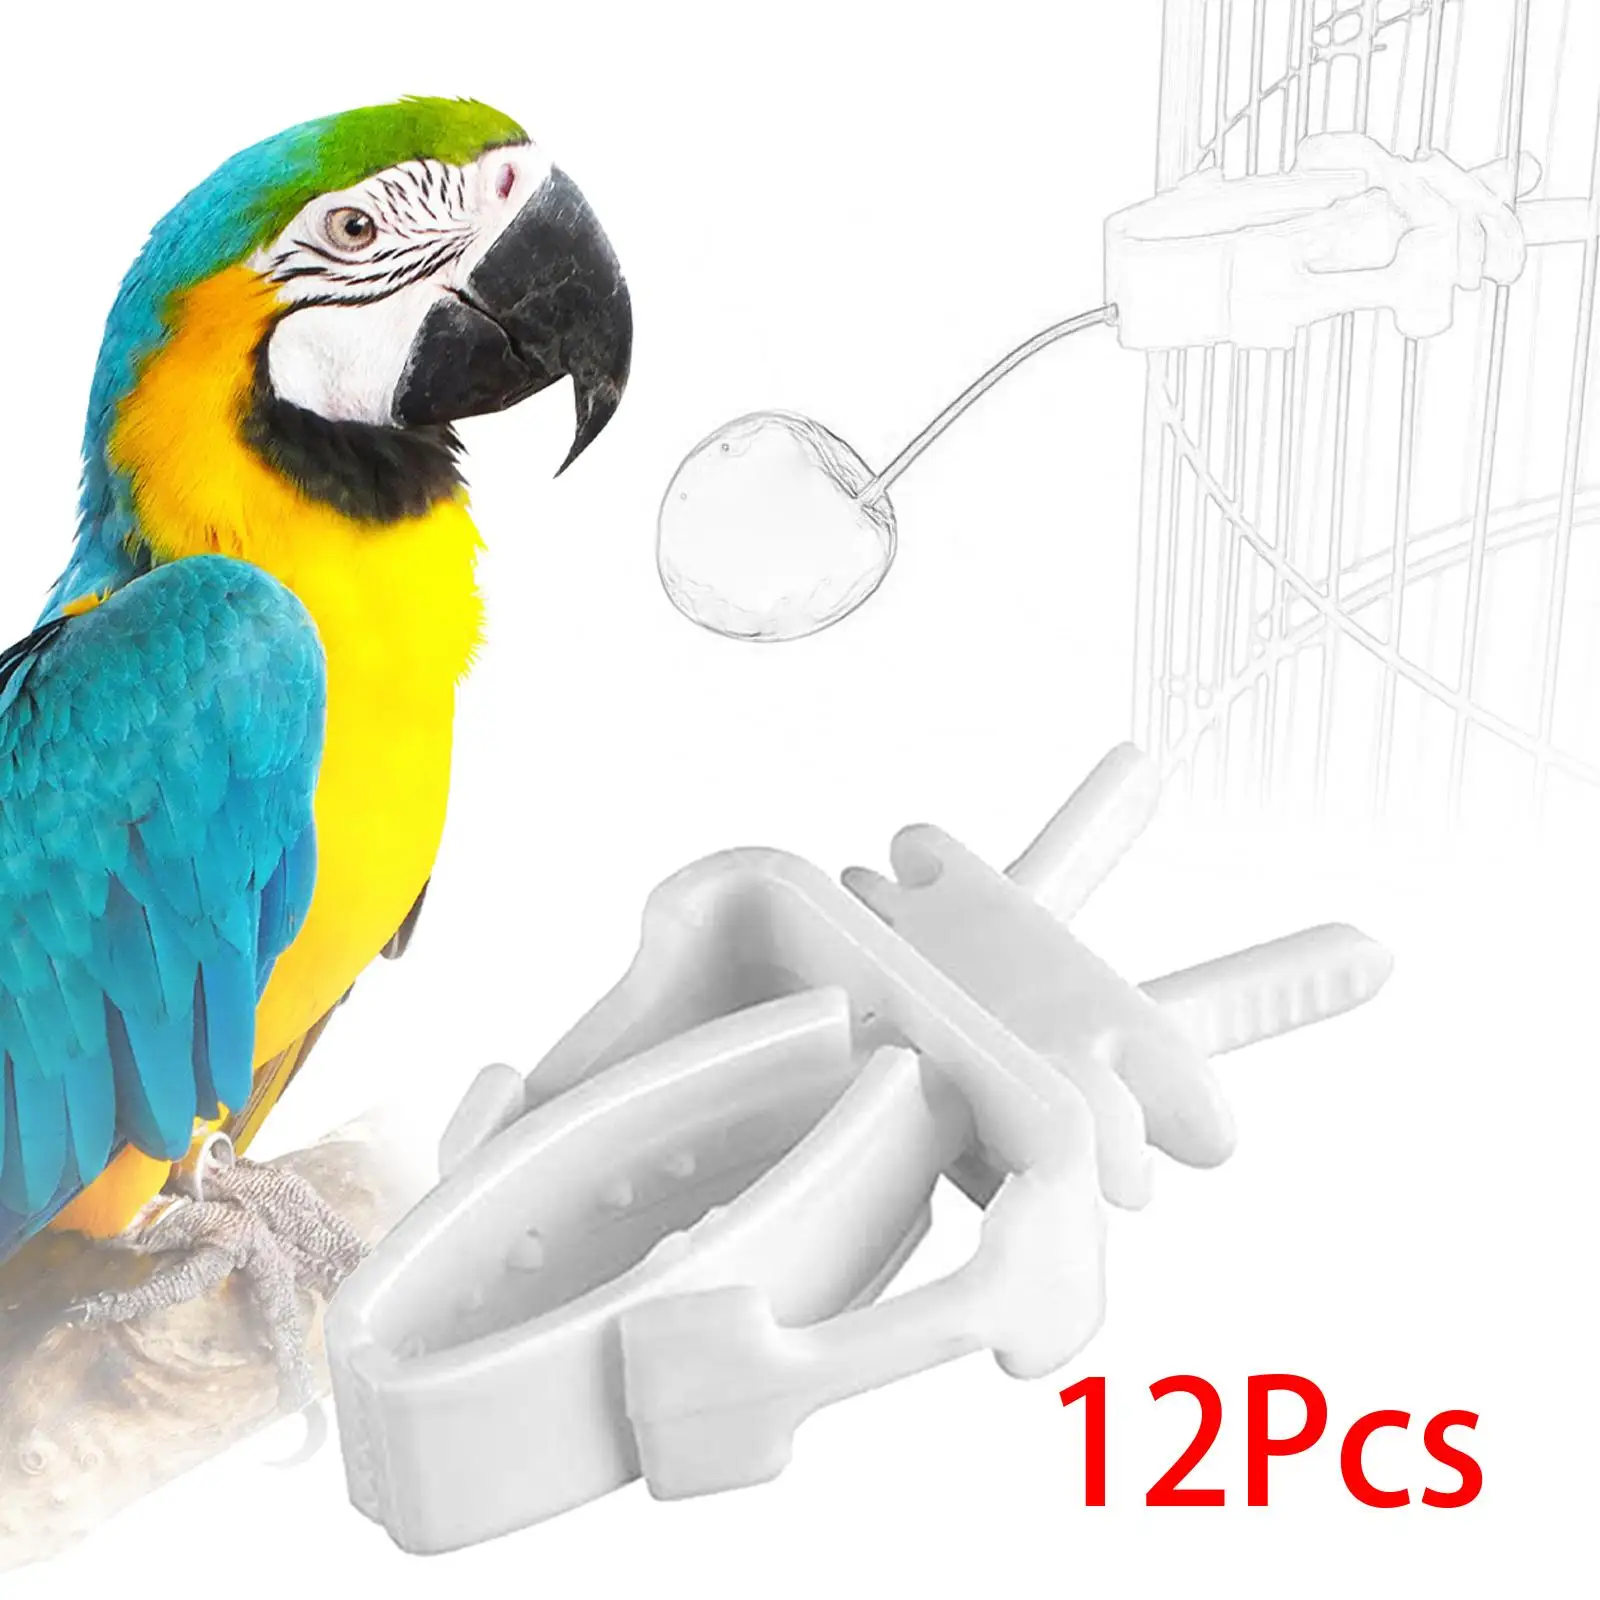 12Pcs Bird Feeding Clips Bird Cage Feeder Clip for Parrot Parakeet Cockatiel